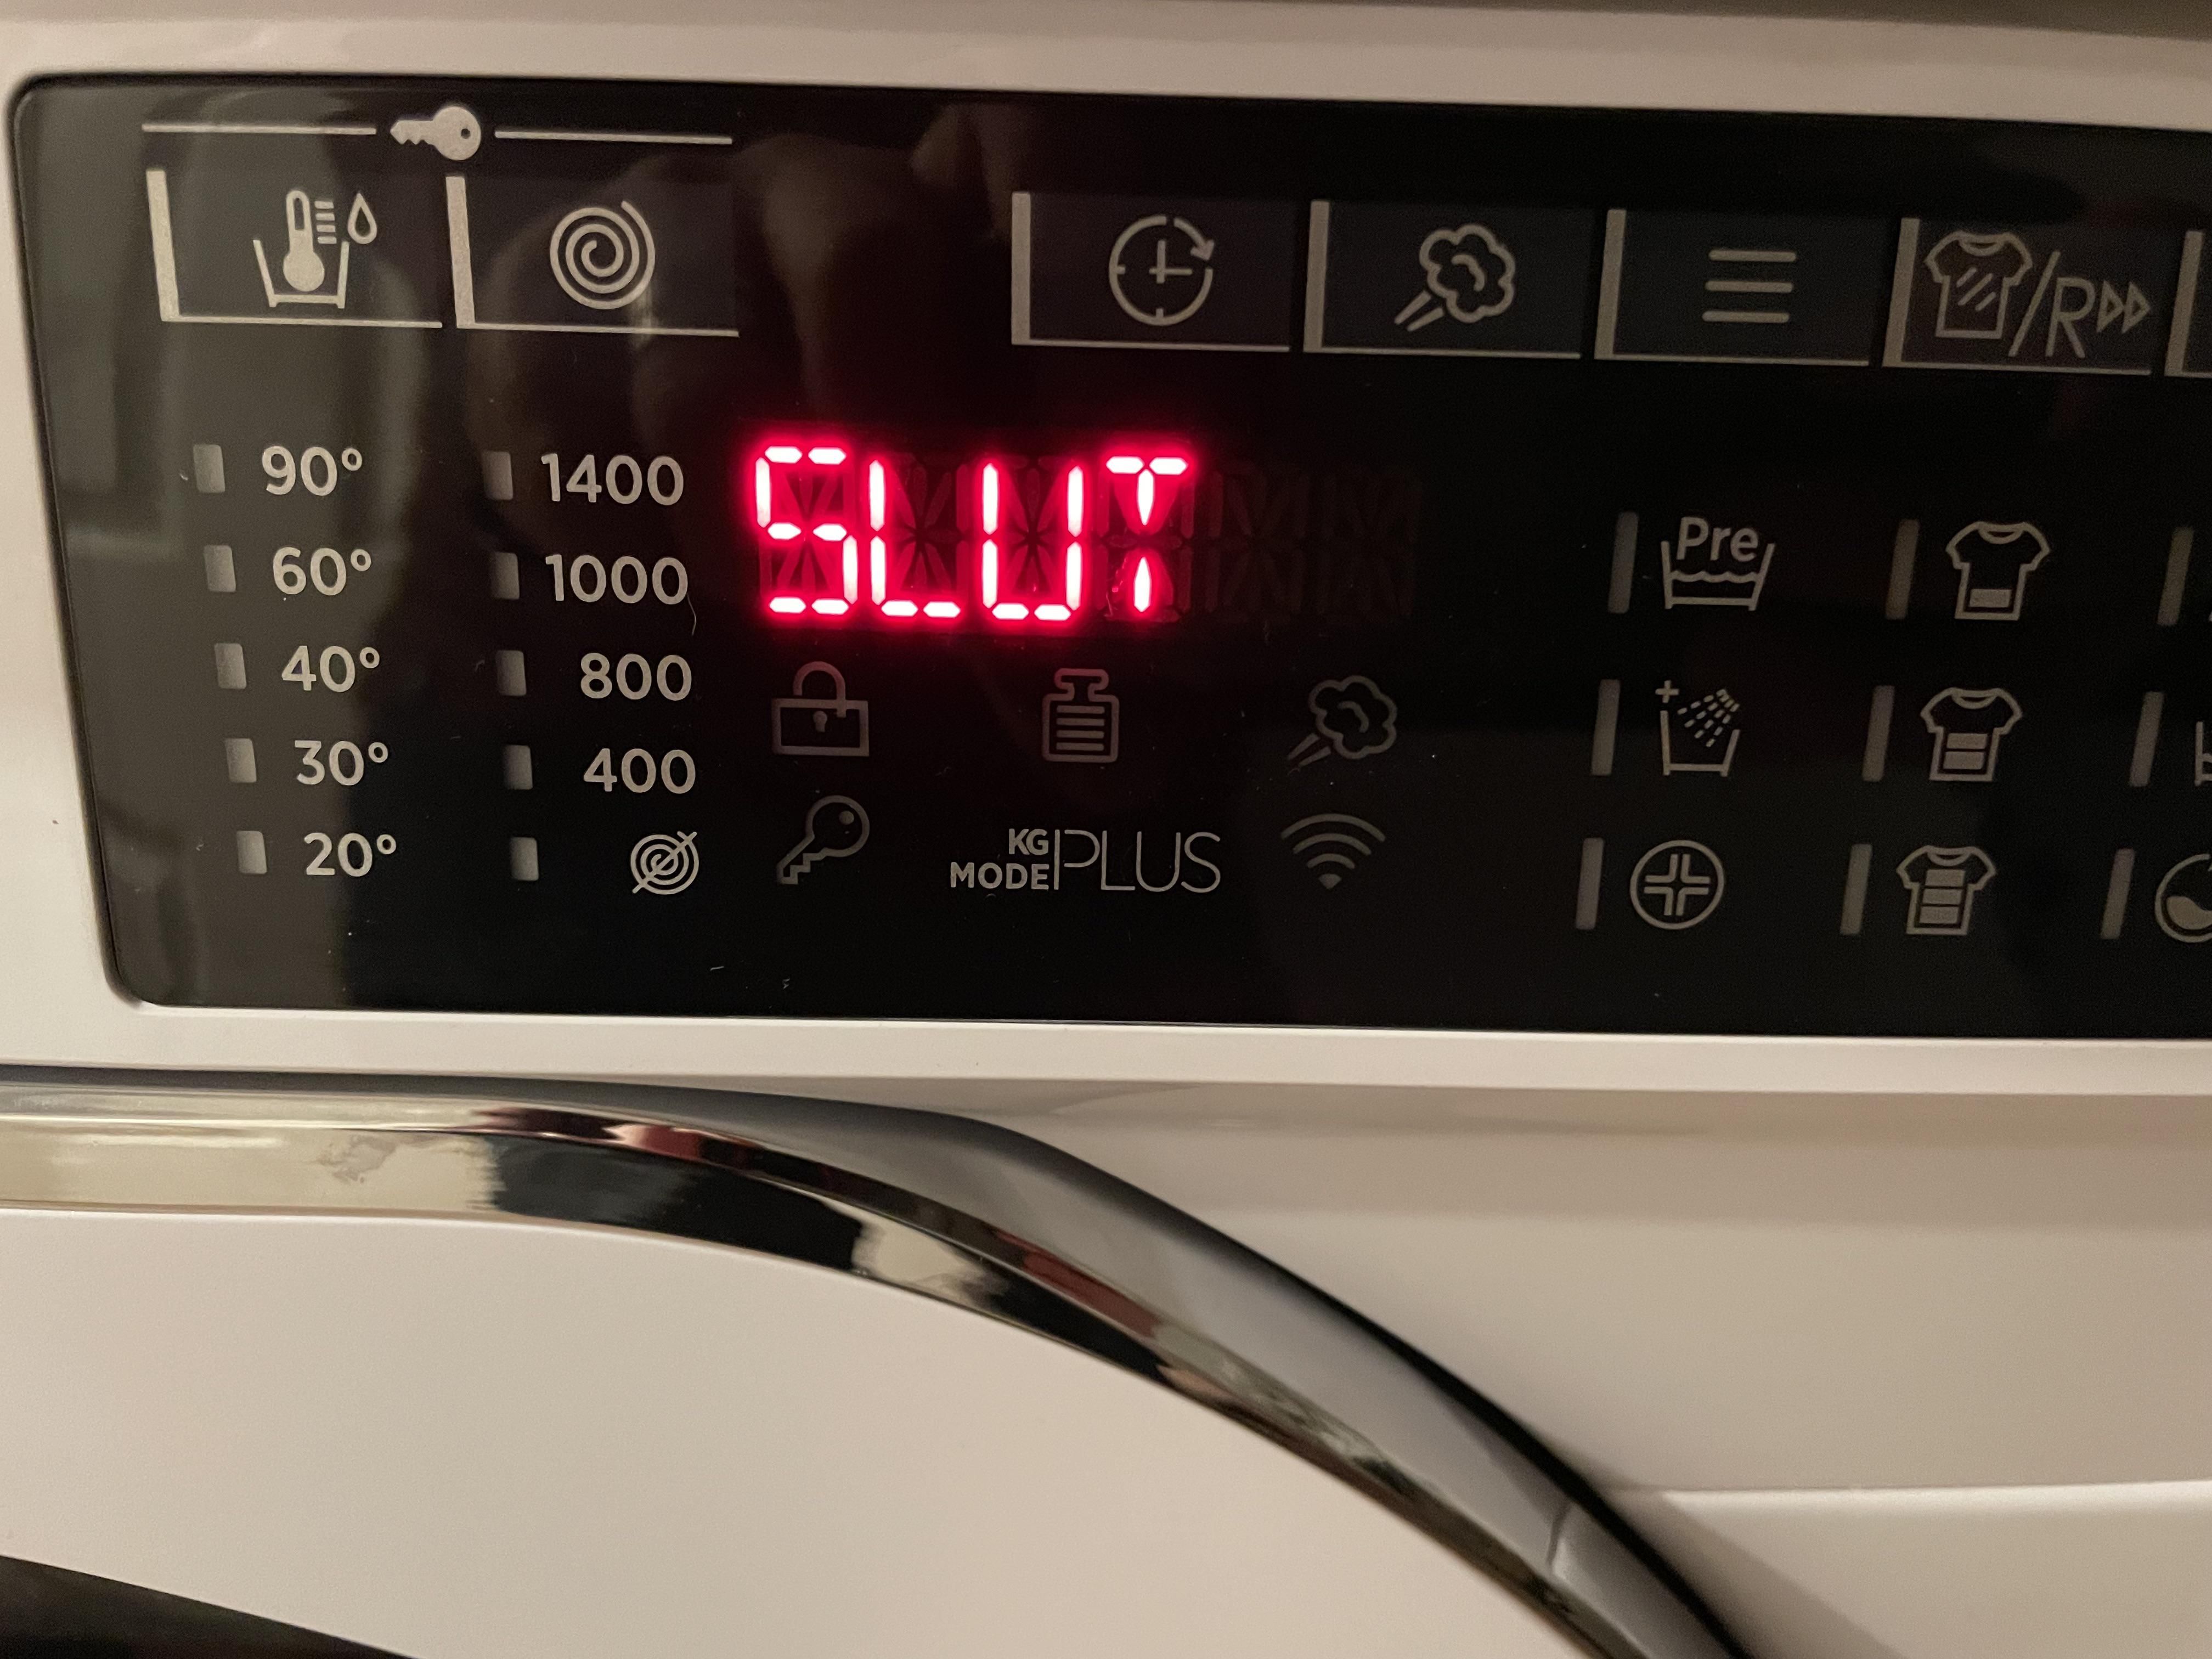 My new washing machine has no chill